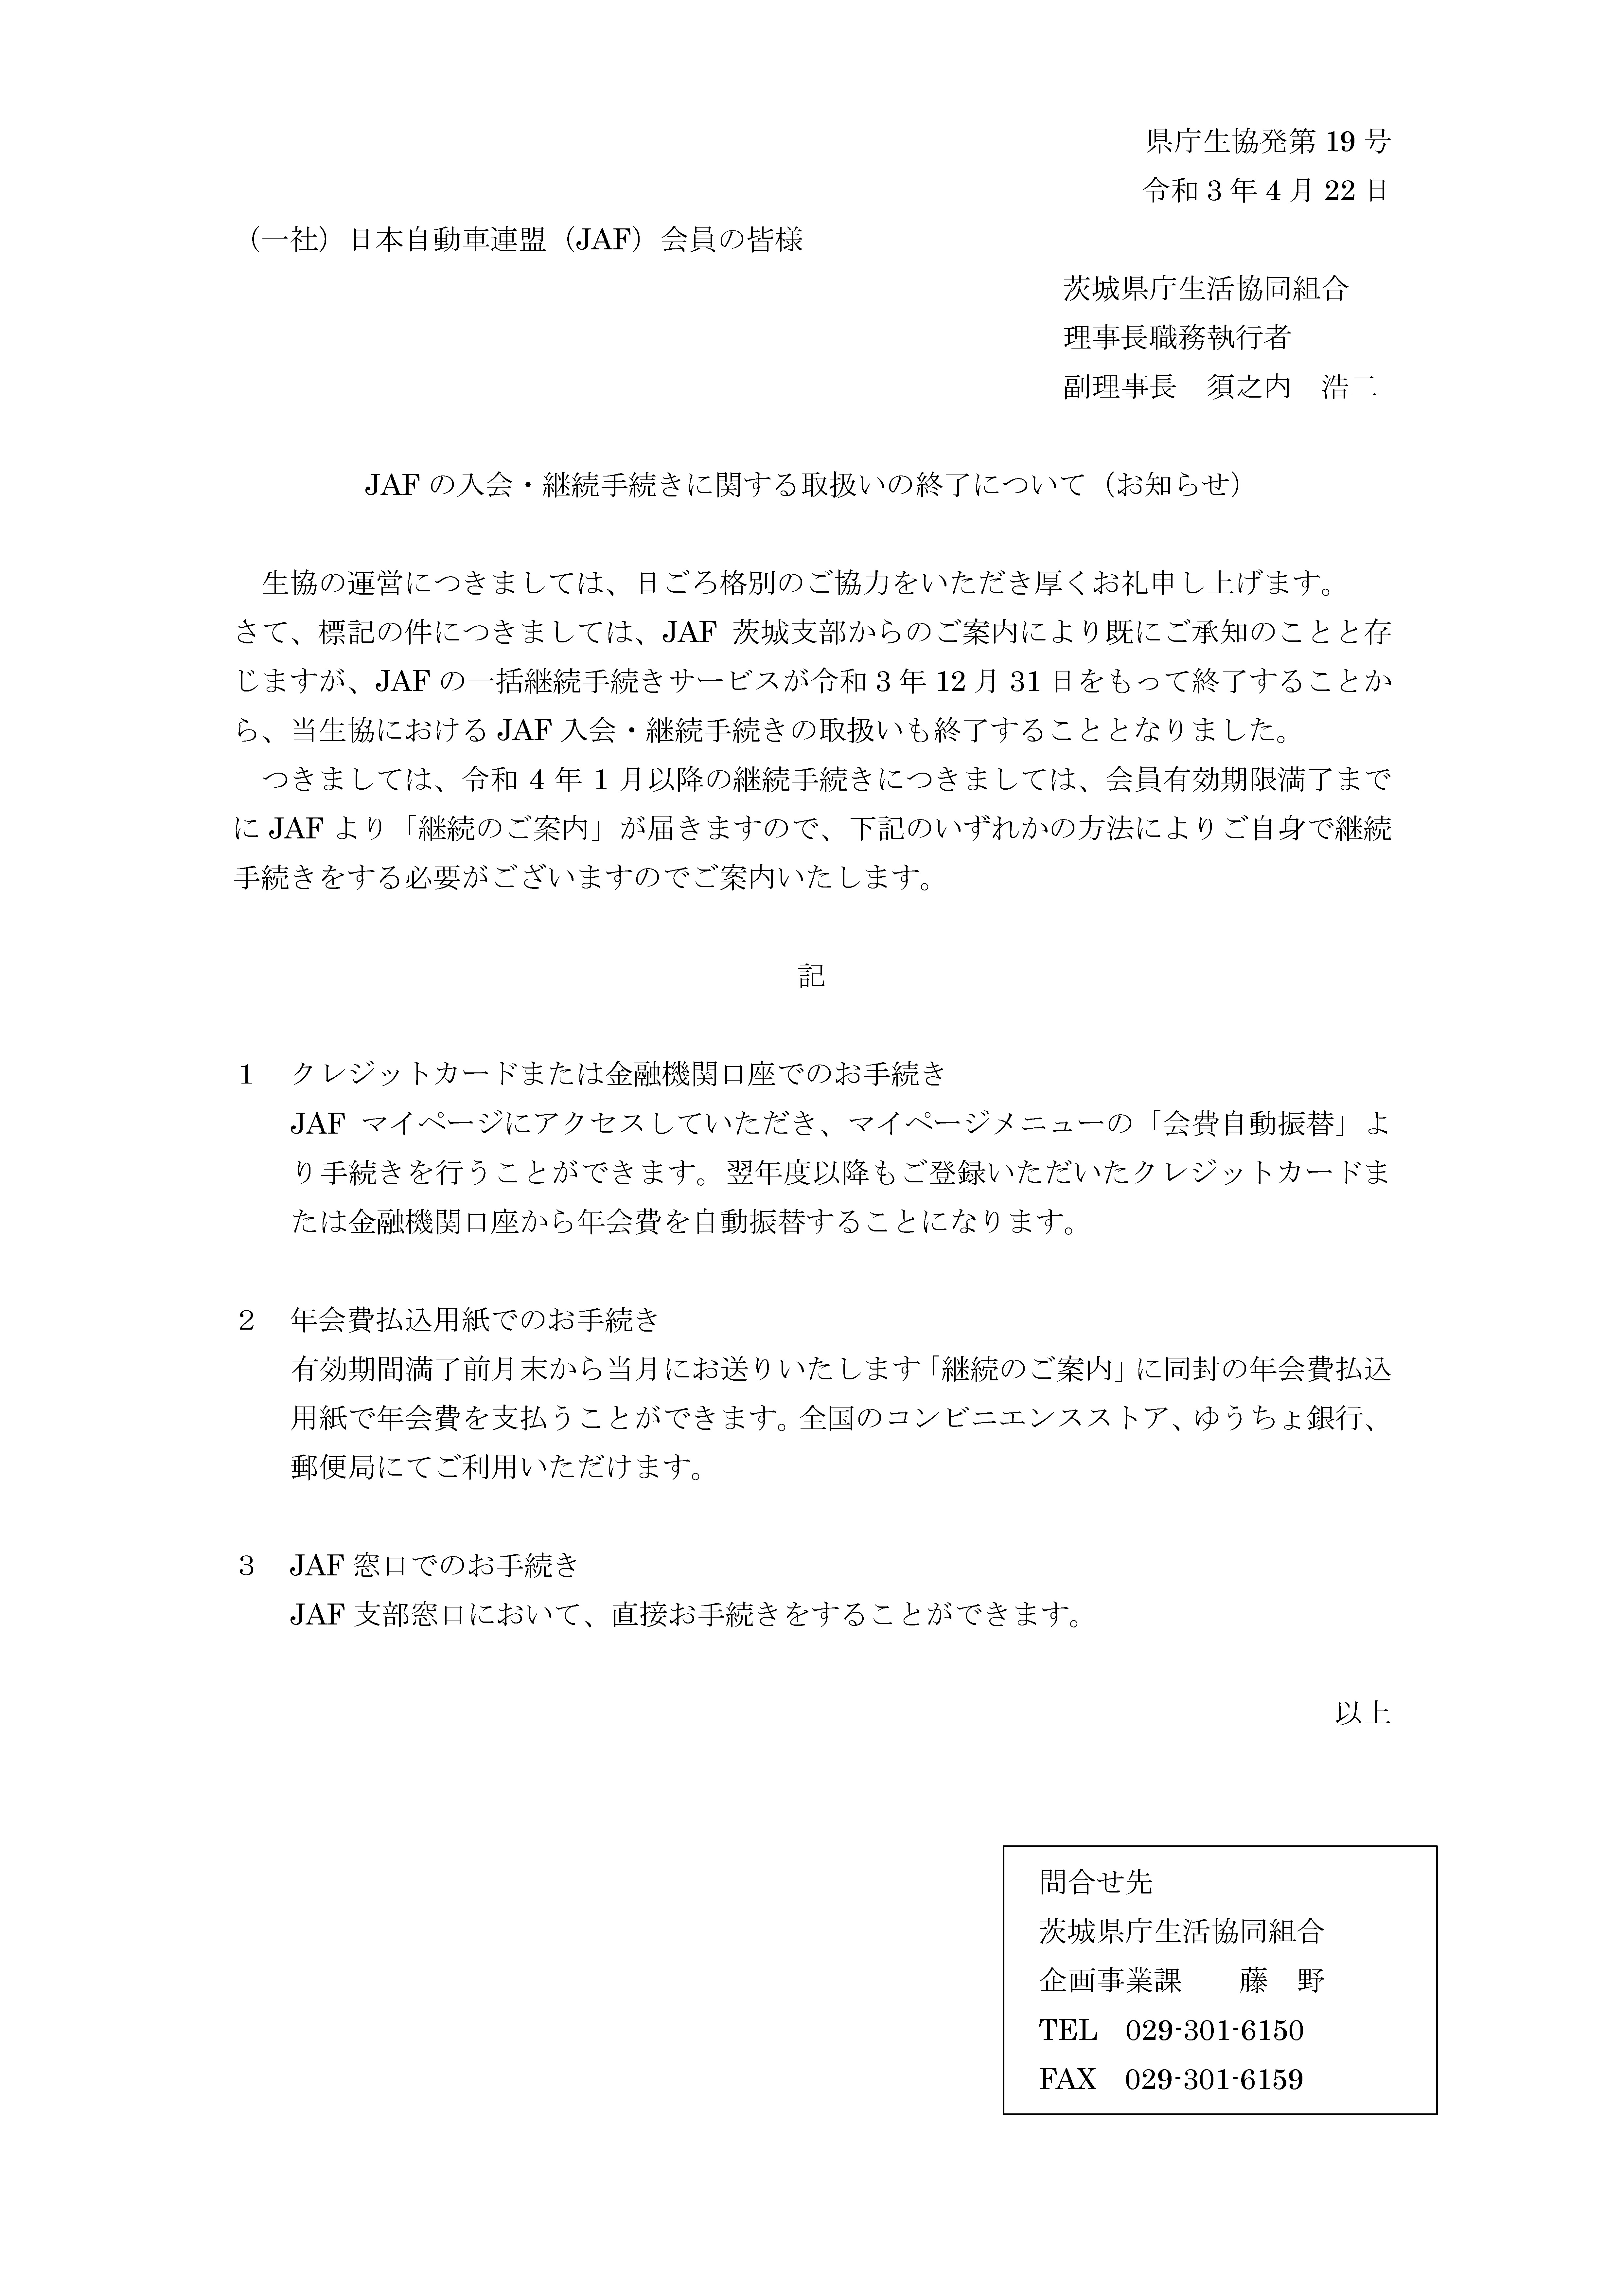 県庁生協発第19号_JAF一括継続手続き終了のお知らせ